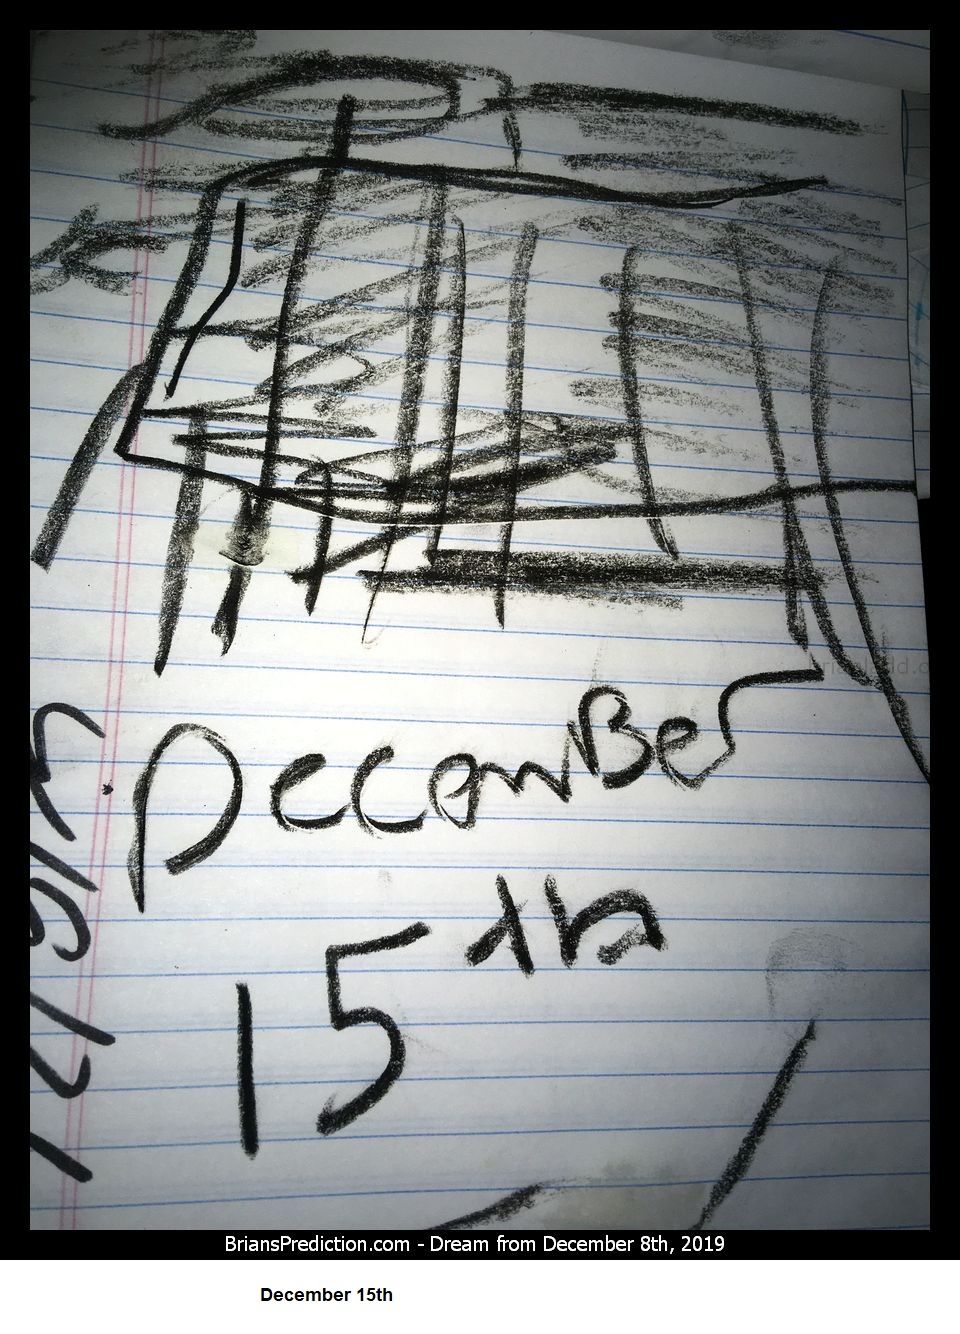 12410 8 December 2019 3 - December 15th....
December 15th.
